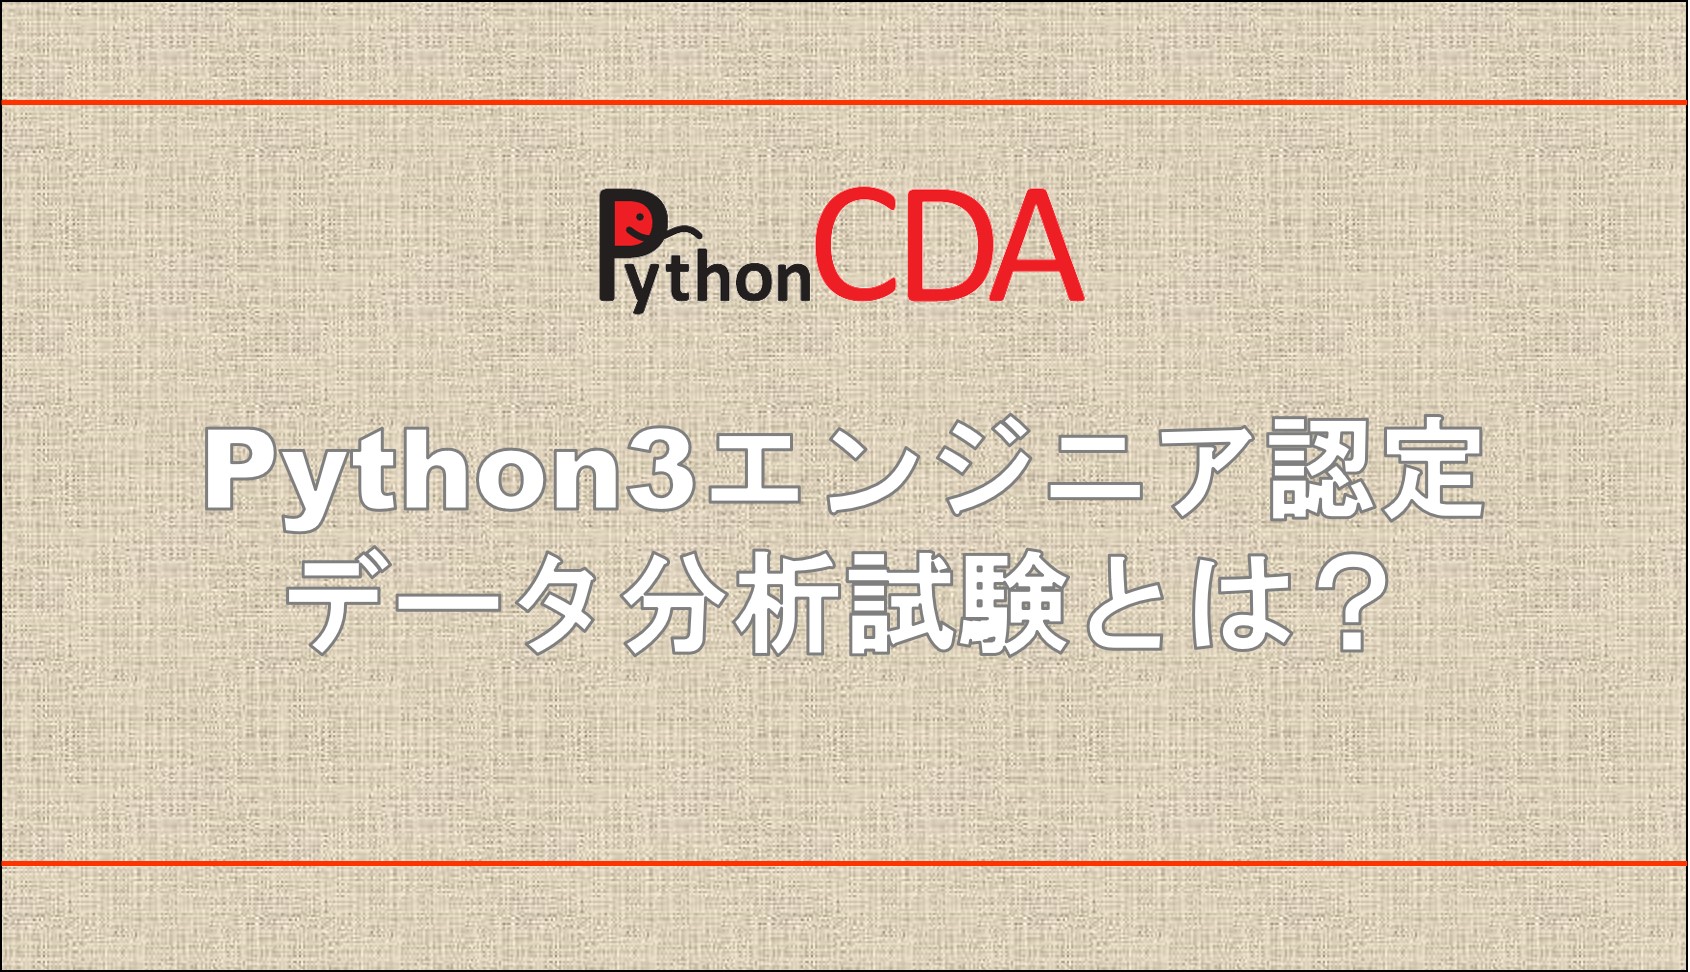 Python3エンジニア認定データ分析試験とは